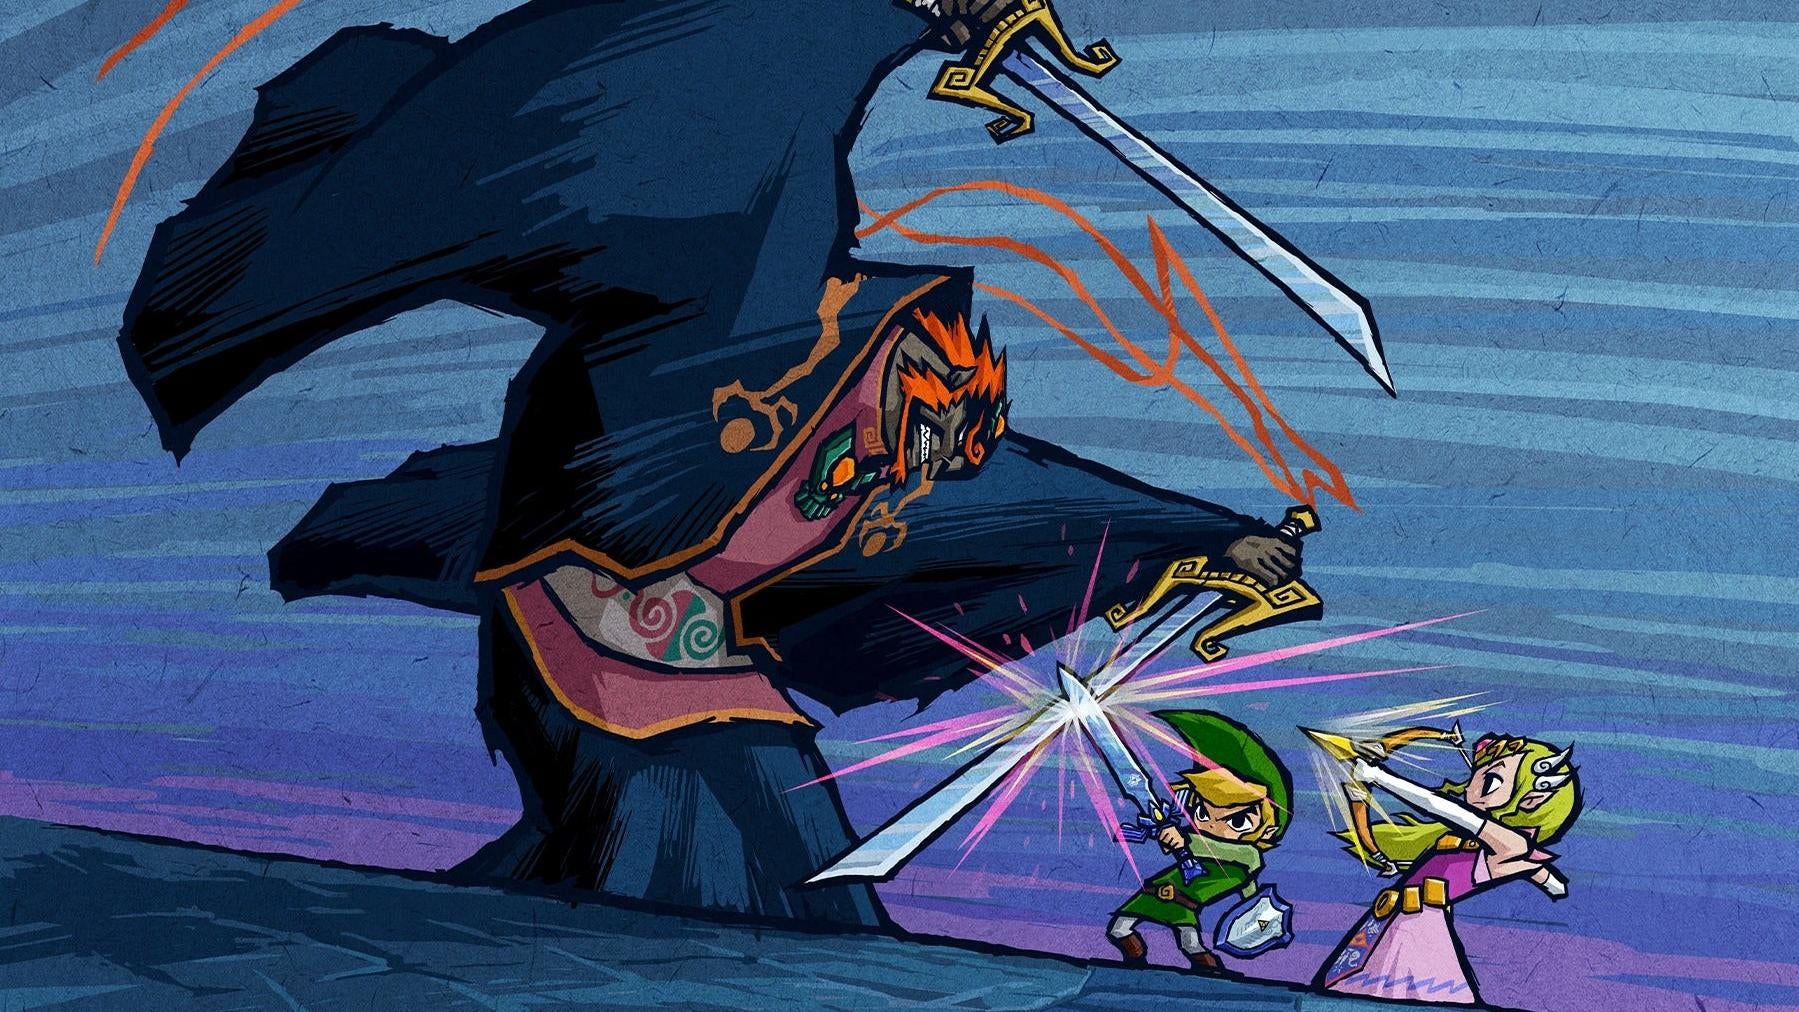 The Legend of Zelda: The Minish Cap - Metacritic